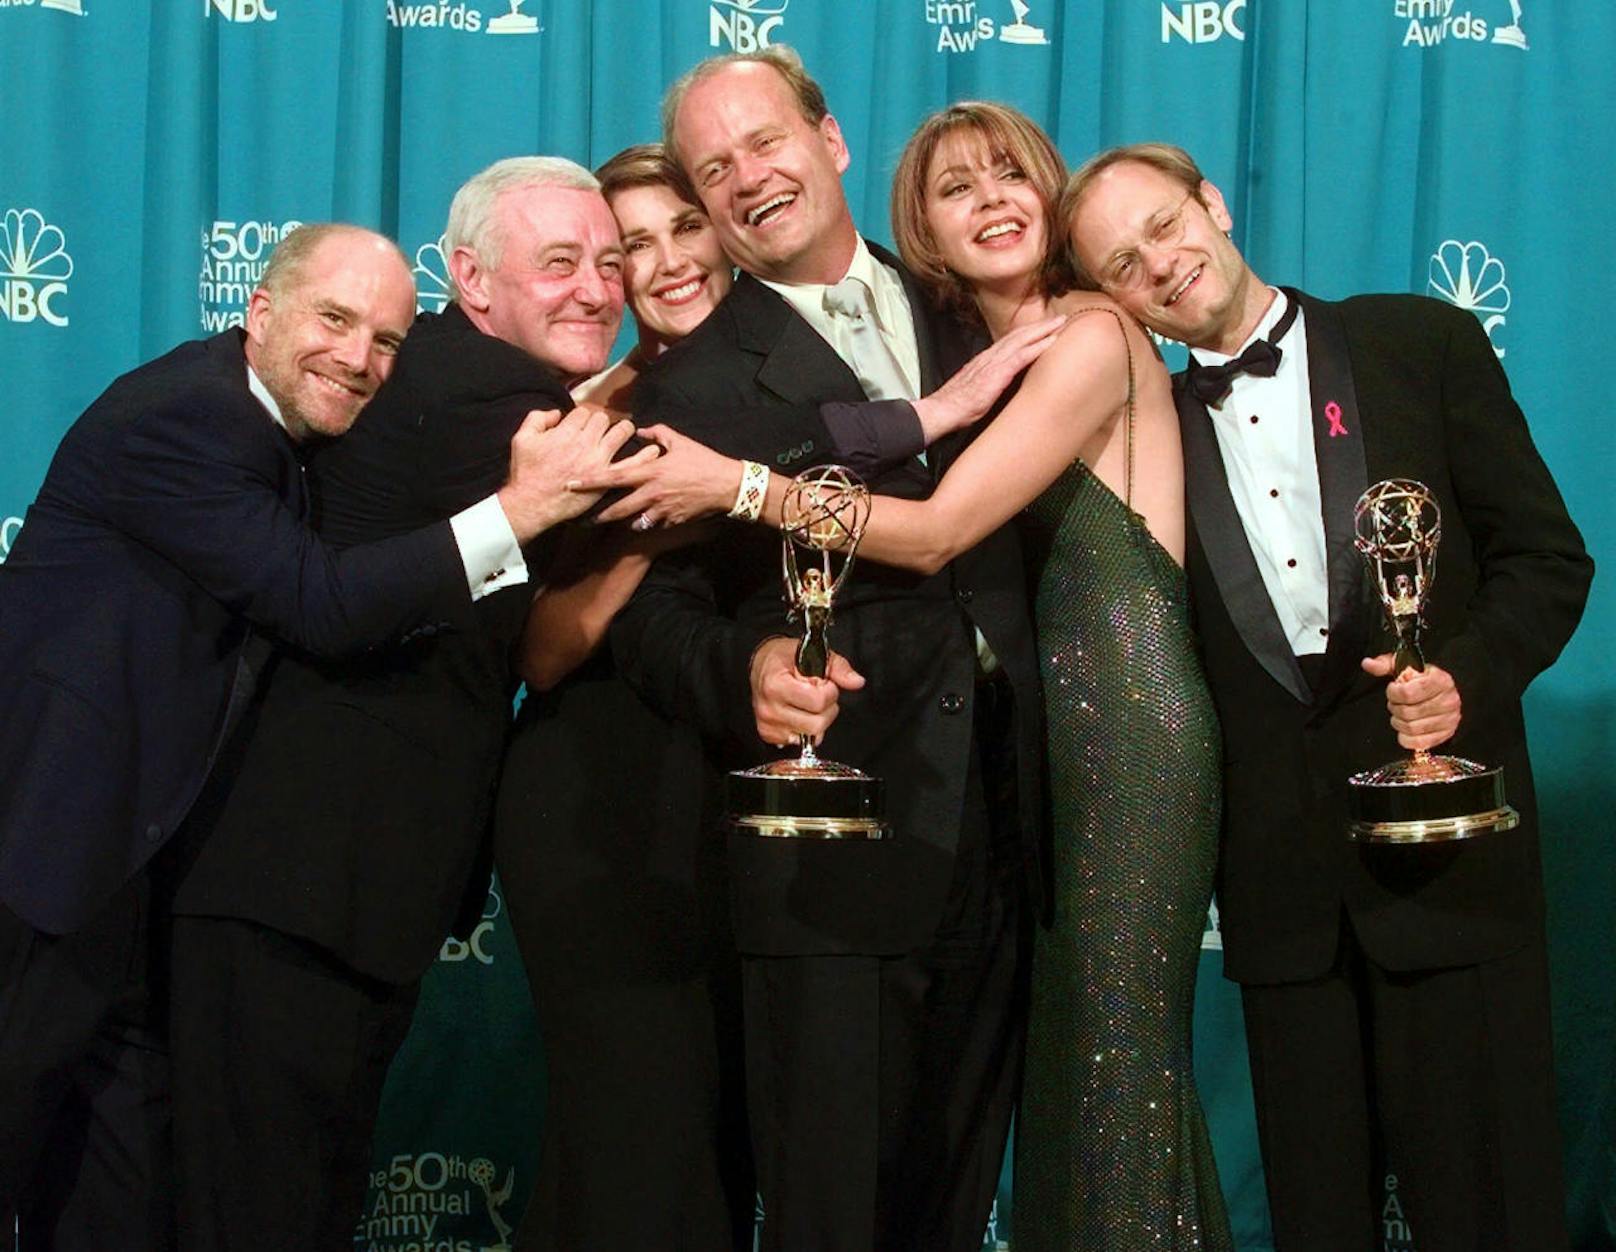 "Frasier" ist eine der meist ausgezeichneten Fernsehserien aller Zeiten. So wurde die Serie unter anderem für 108 Emmys und 24 Golden Globes nominiert. Zwischen 1994 und 2001 wurde die Serie achtmal in Folge für den Emmy als Outstanding Comedy Series, als herausragende Comedy-Serie, nominiert, und Frasier ist die einzige Serie, die fünfmal hintereinander, zwischen 1994 und 1998, ausgezeichnet wurde.